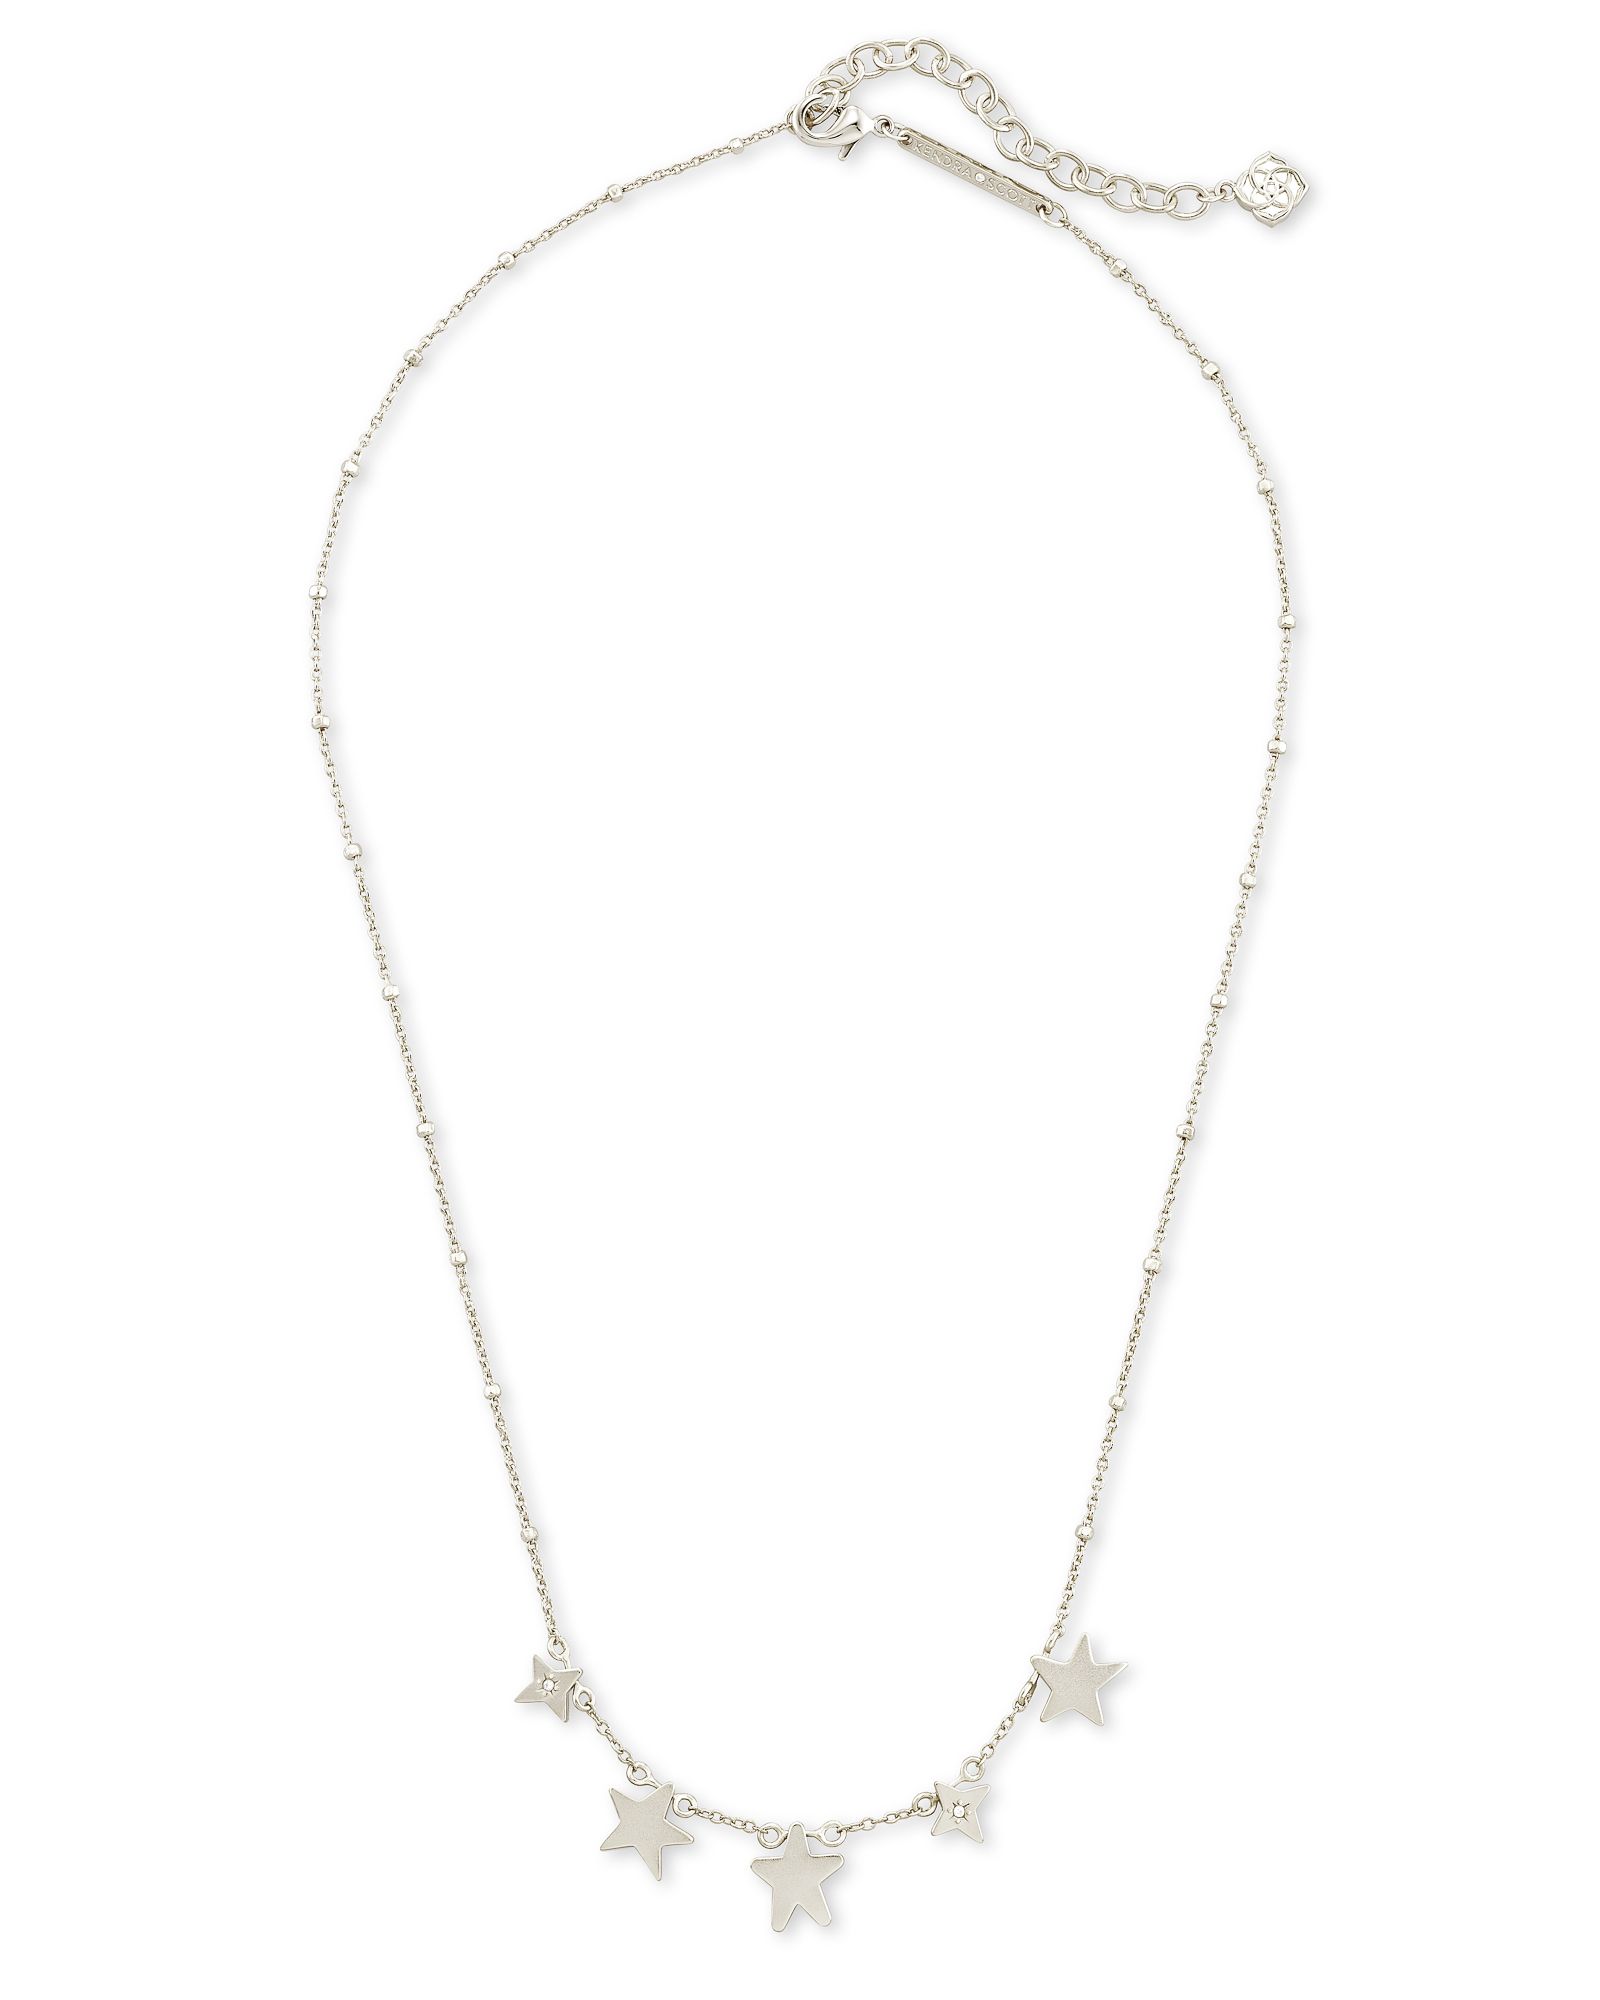 Jae Star Choker Necklace in Silver | Kendra Scott